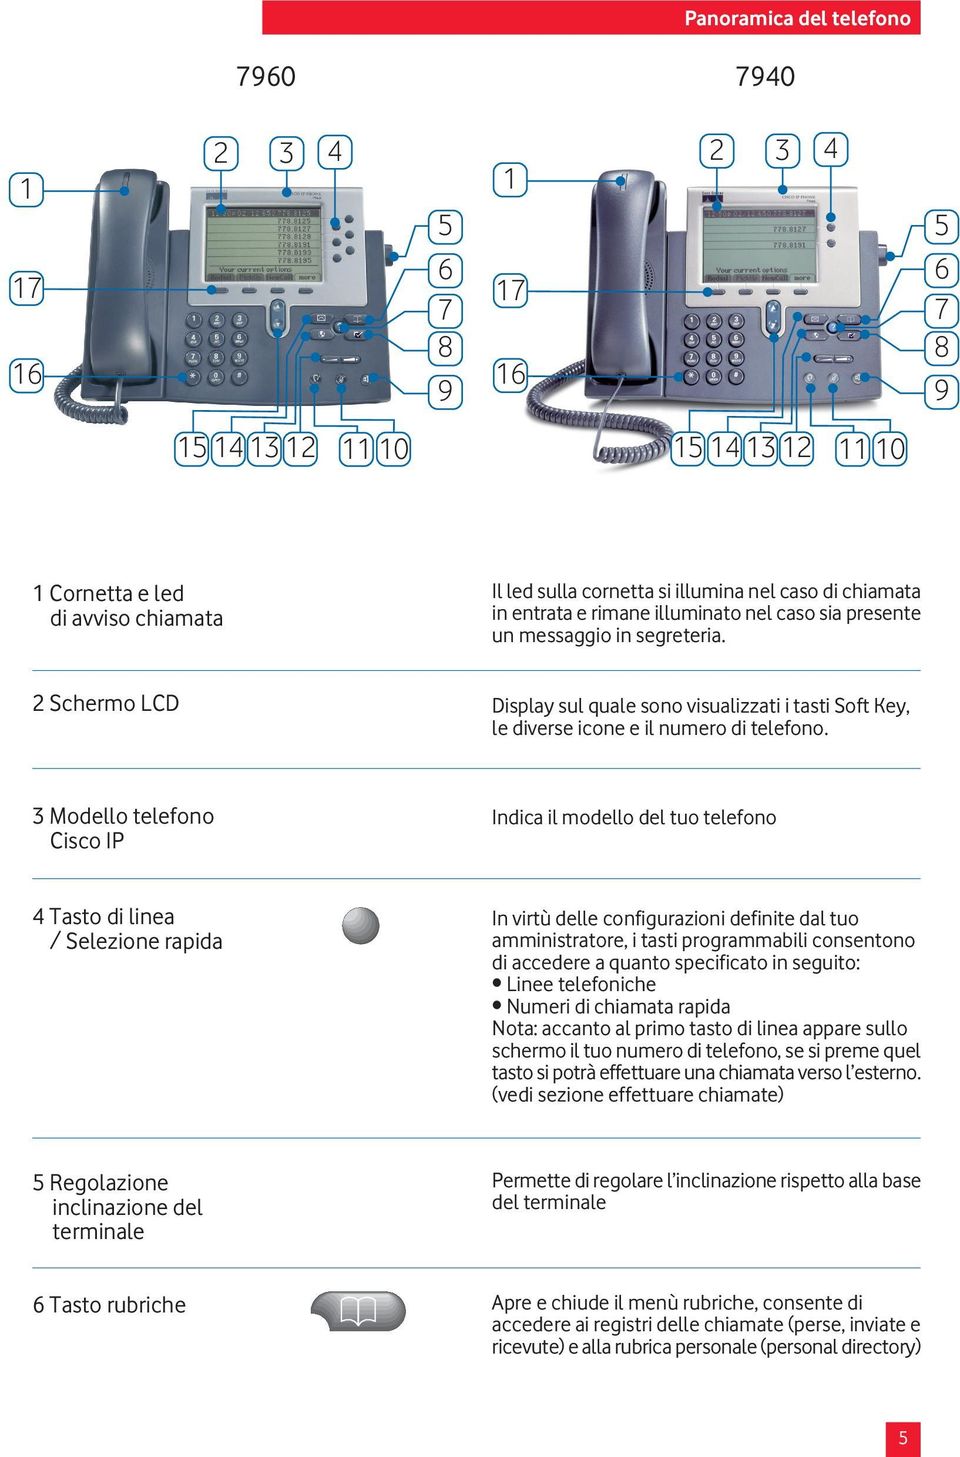 3 Modello telefono Cisco IP Indica il modello del tuo telefono 4 Tasto di linea / Selezione rapida In virtù delle configurazioni definite dal tuo amministratore, i tasti programmabili consentono di